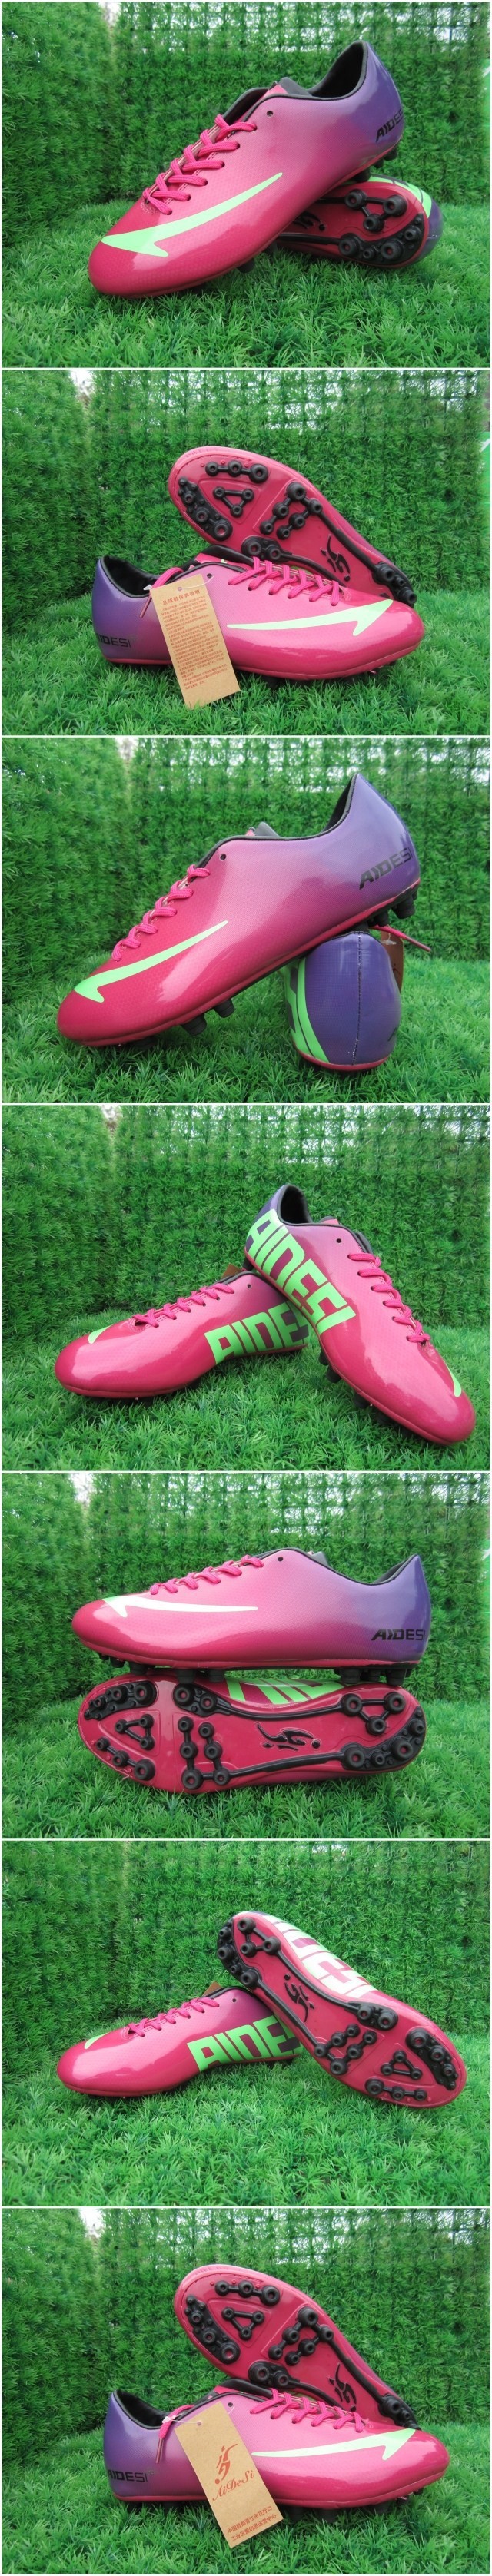 2015 JUNIOR KIDS Football Soccer Boots Cleats